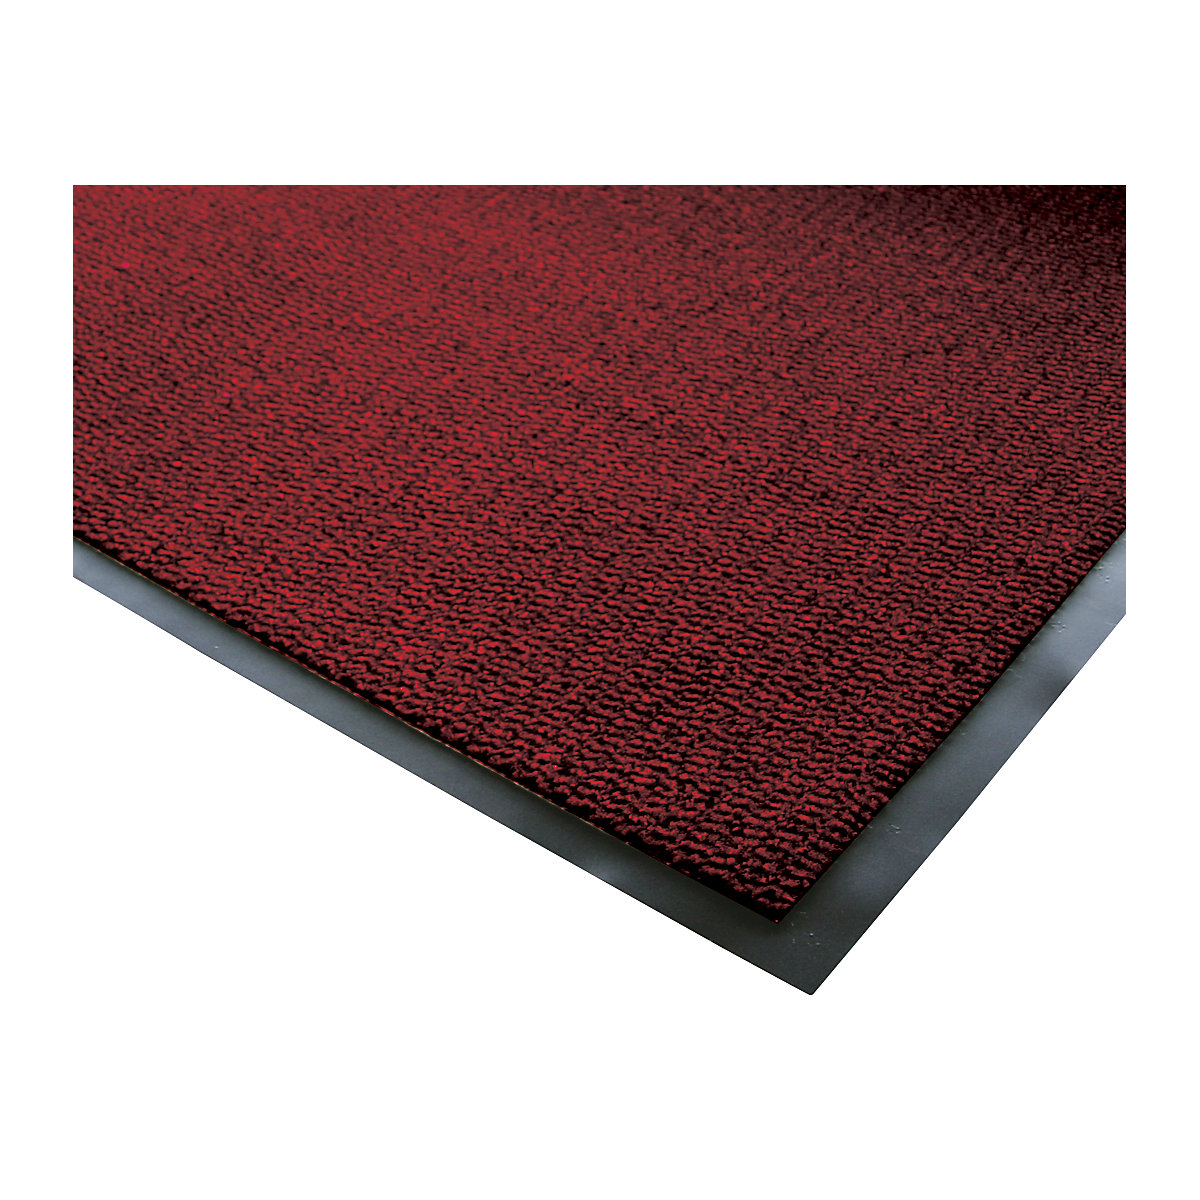 Mata wychwytująca brud do stosowania wewnątrz, runo z polipropylenu, dł. x szer. 1200 x 900 mm, czarny / czerwony